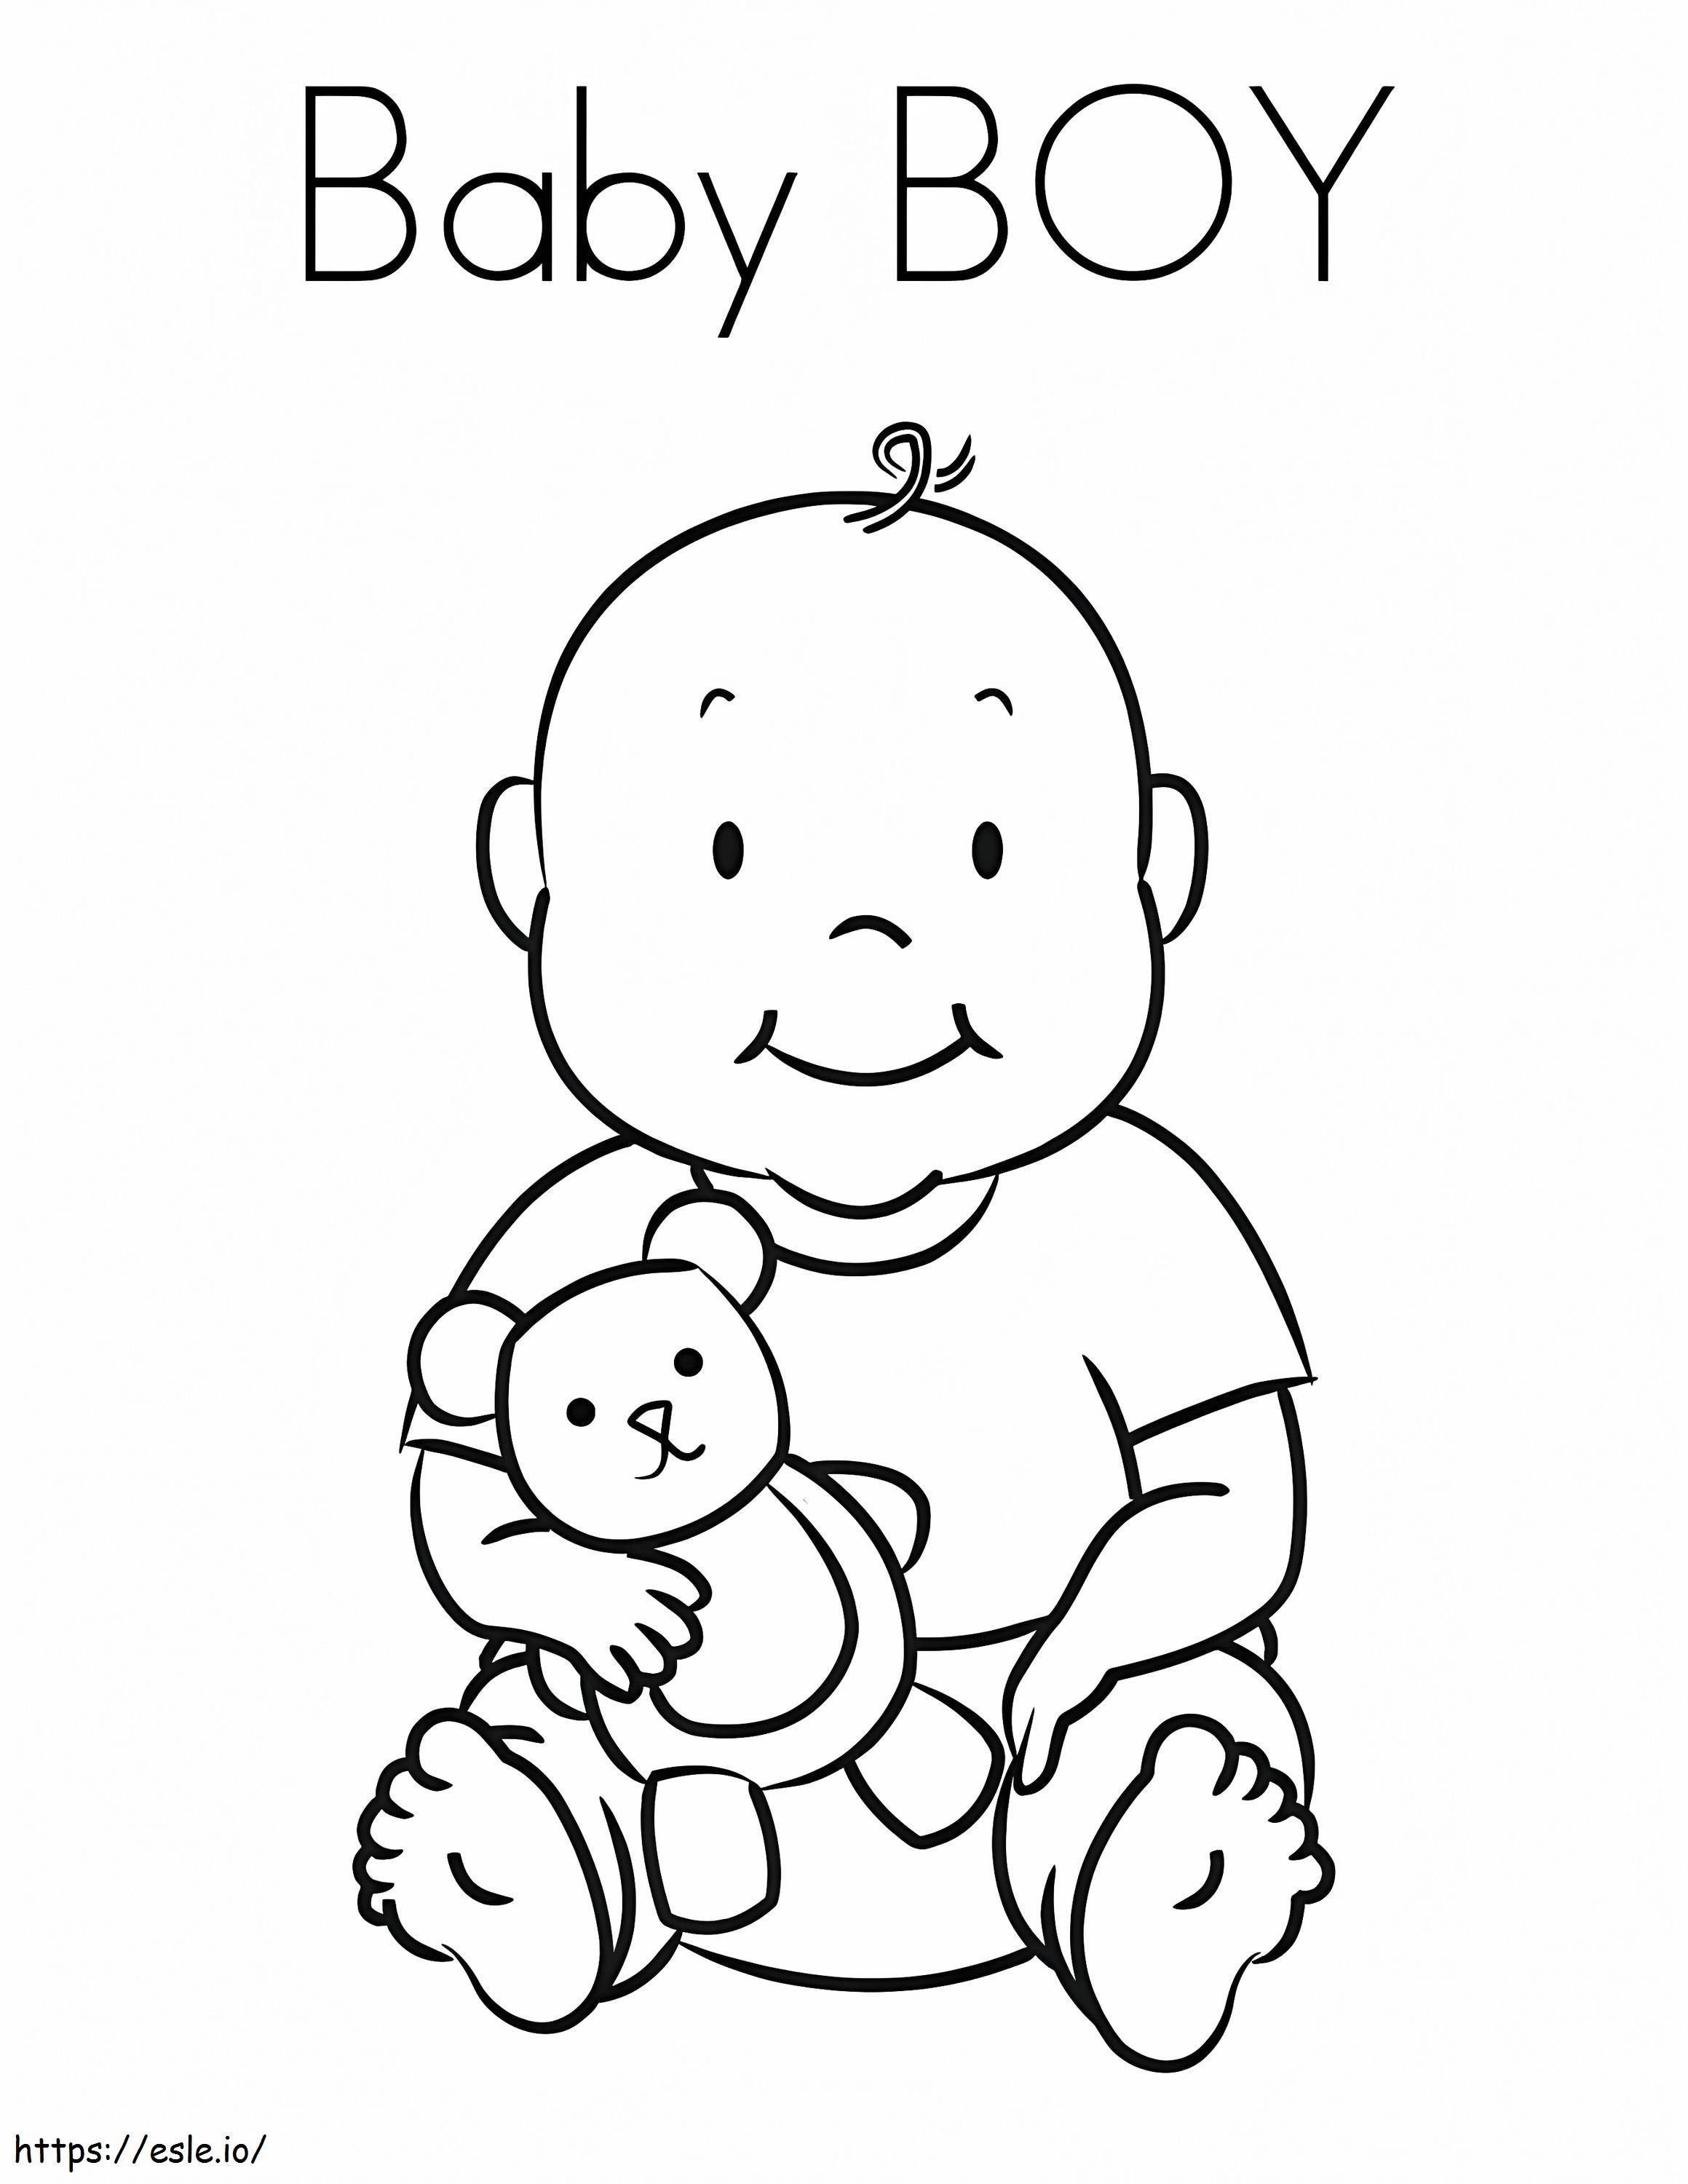 Baby Junge und Teddy ausmalbilder